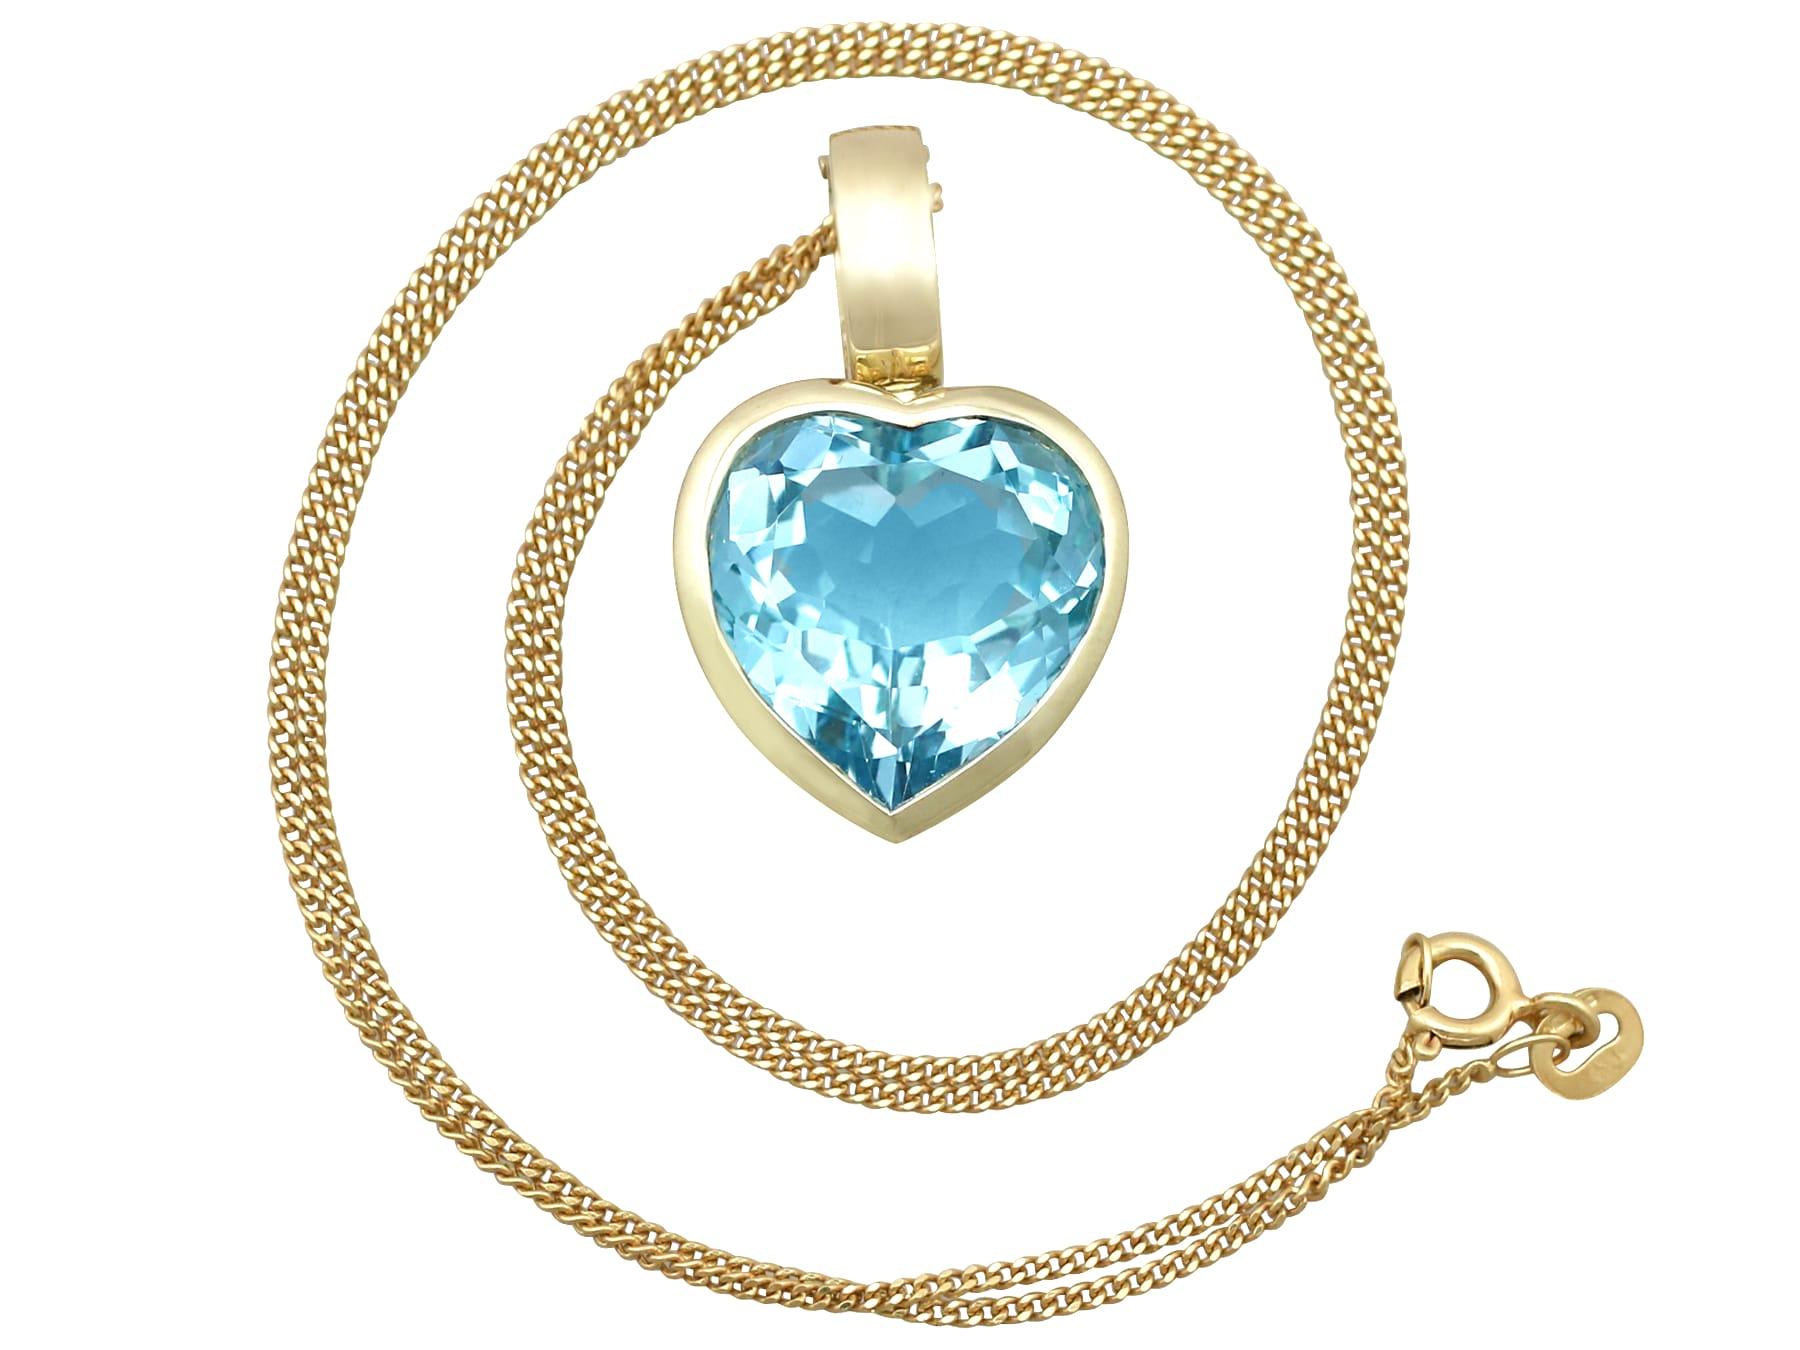 Un beau et impressionnant pendentif en forme de cœur en topaze bleue de 13,50 carats et en or jaune 9 carats, qui fait partie de nos diverses collections de bijoux vintage et de bijoux de succession.

Ce pendentif en forme de cœur en topaze, fin et